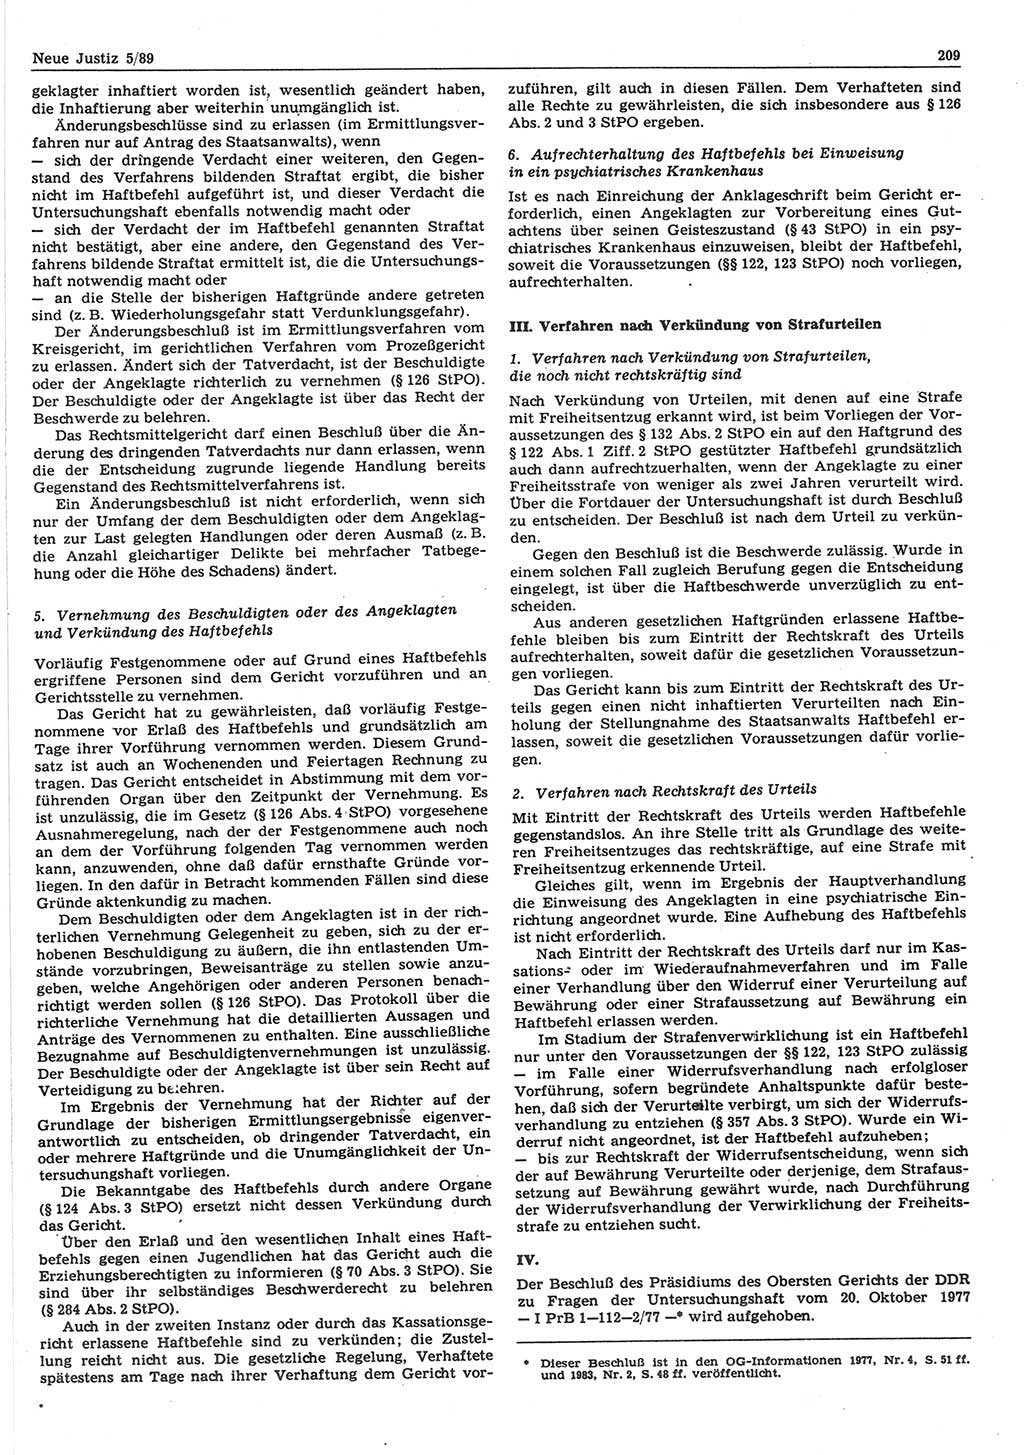 Neue Justiz (NJ), Zeitschrift für sozialistisches Recht und Gesetzlichkeit [Deutsche Demokratische Republik (DDR)], 43. Jahrgang 1989, Seite 209 (NJ DDR 1989, S. 209)